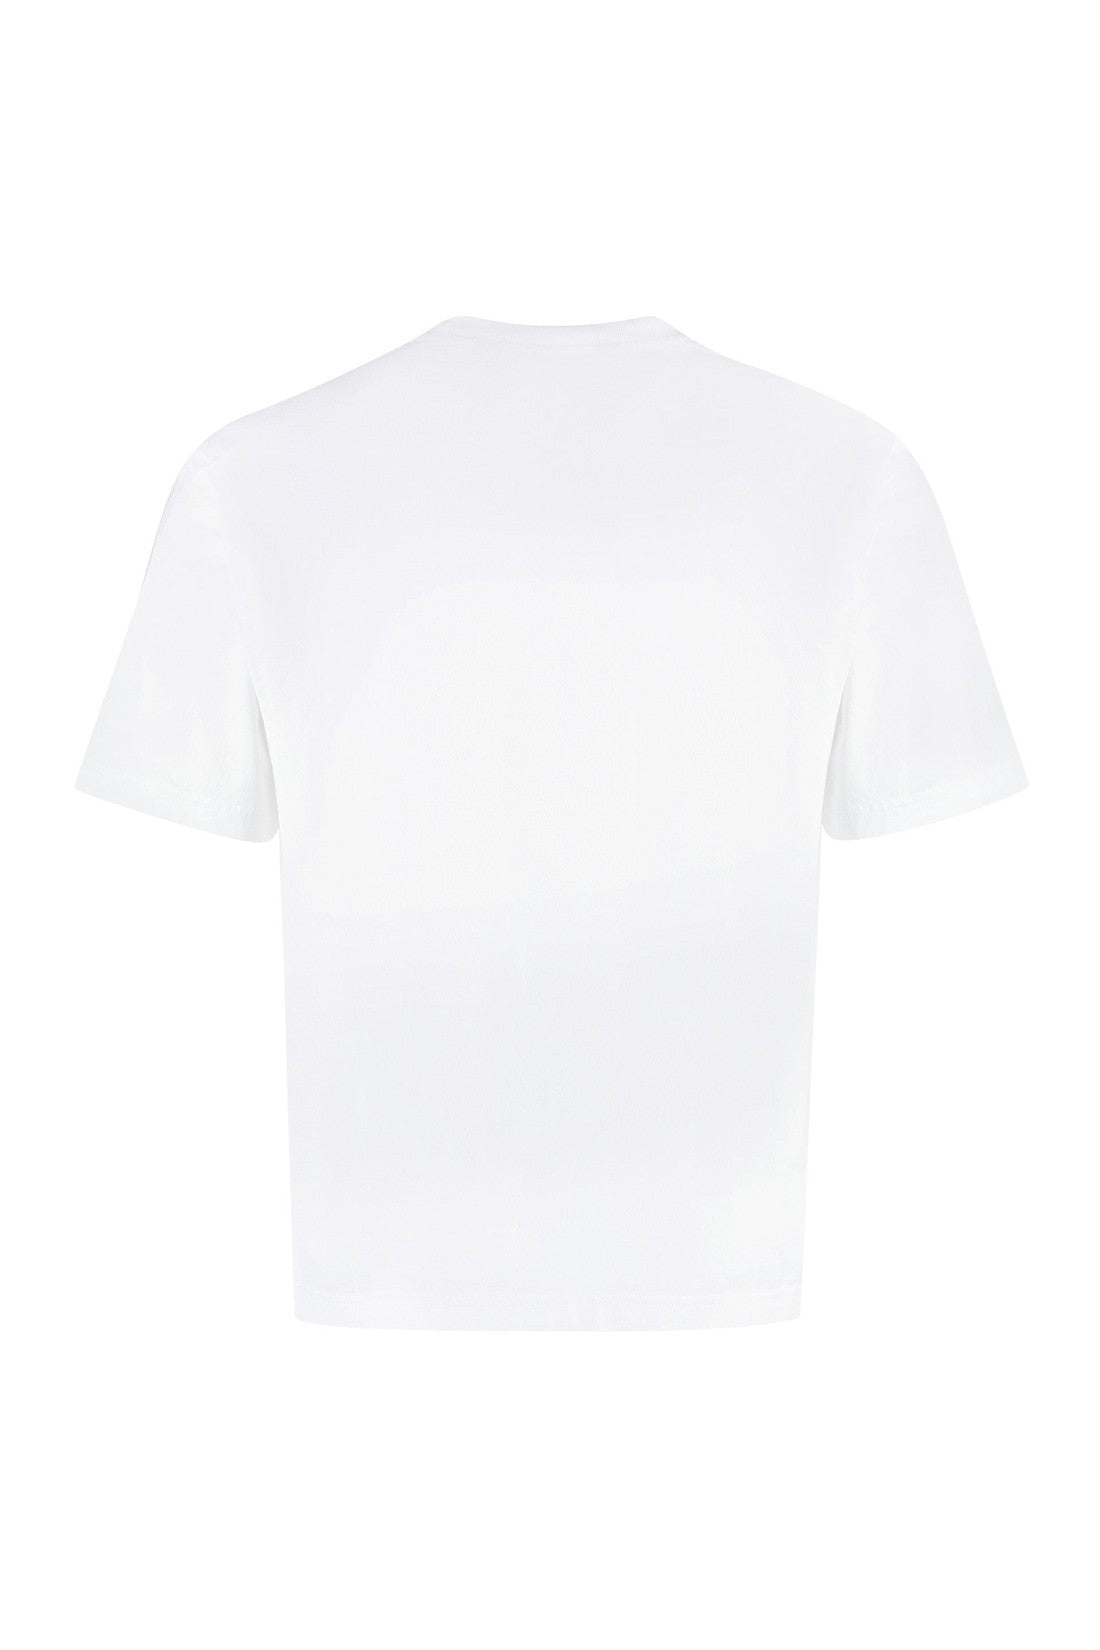 Palm Angels-OUTLET-SALE-Logo cotton t-shirt-ARCHIVIST